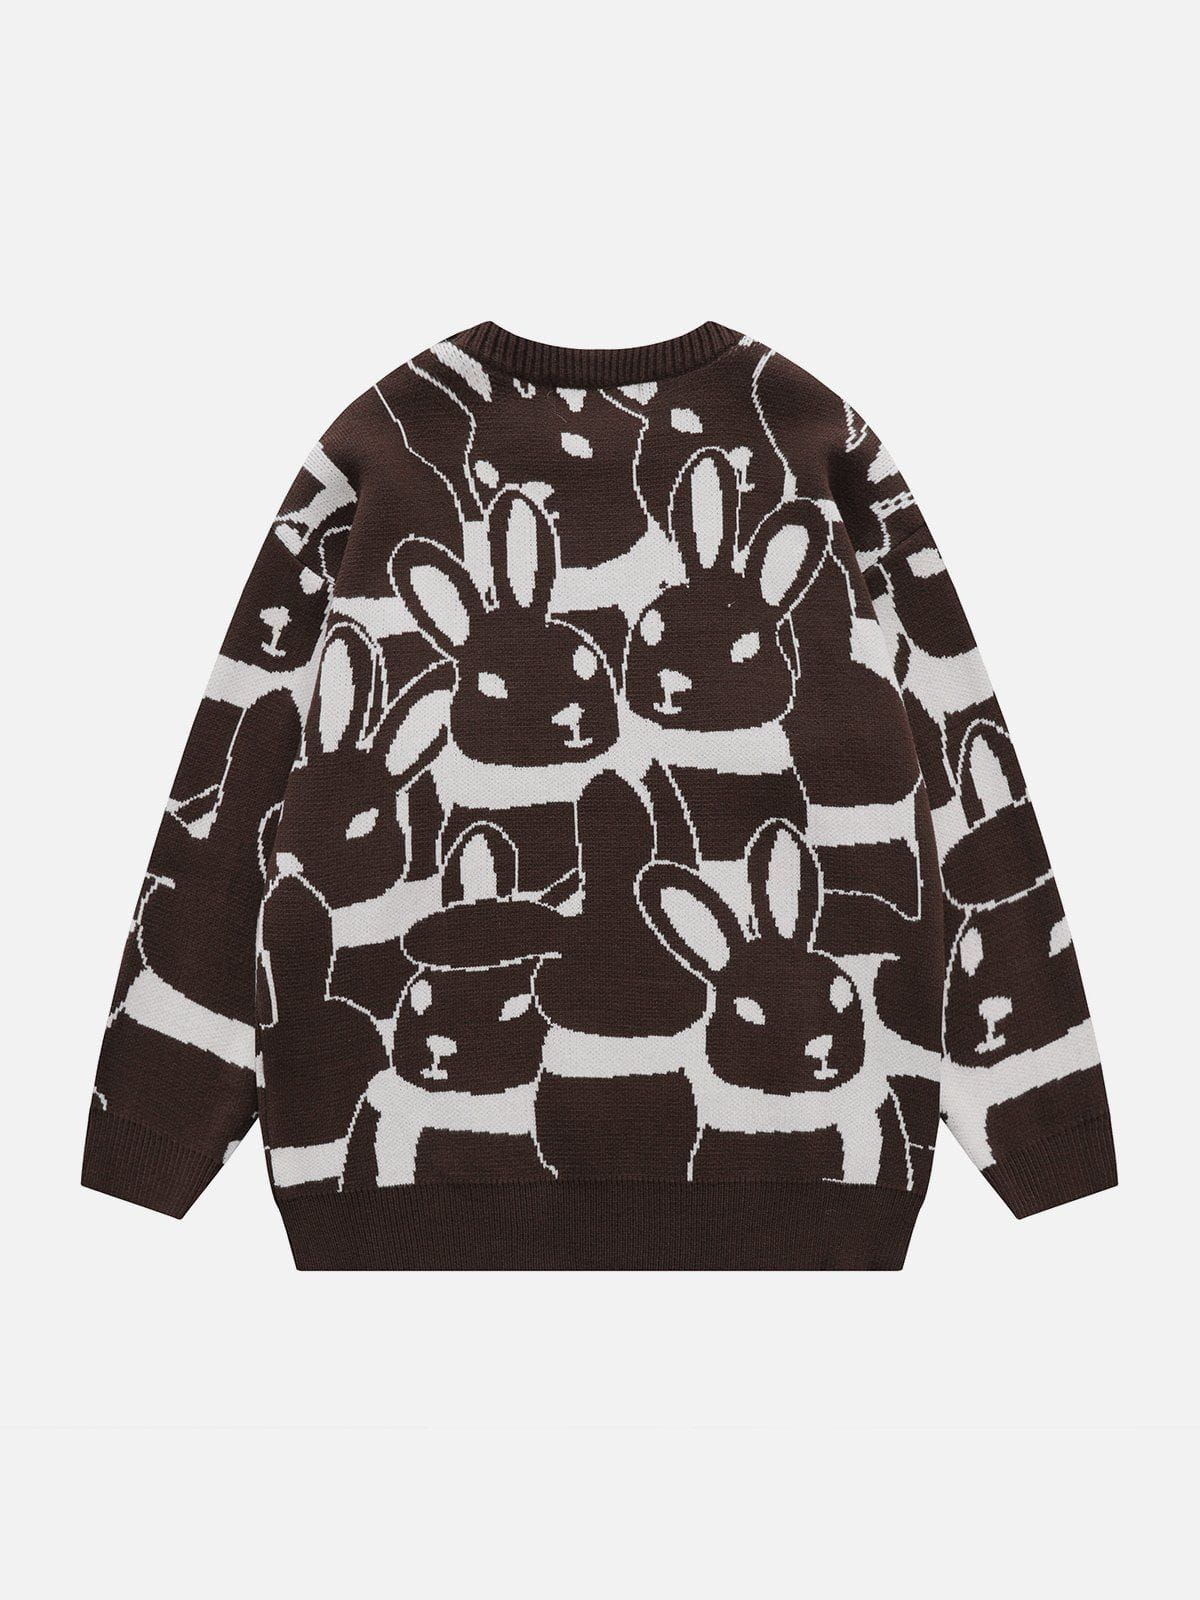 Eprezzy® - Full Rabbit Jacquard Knit Sweater Streetwear Fashion - eprezzy.com